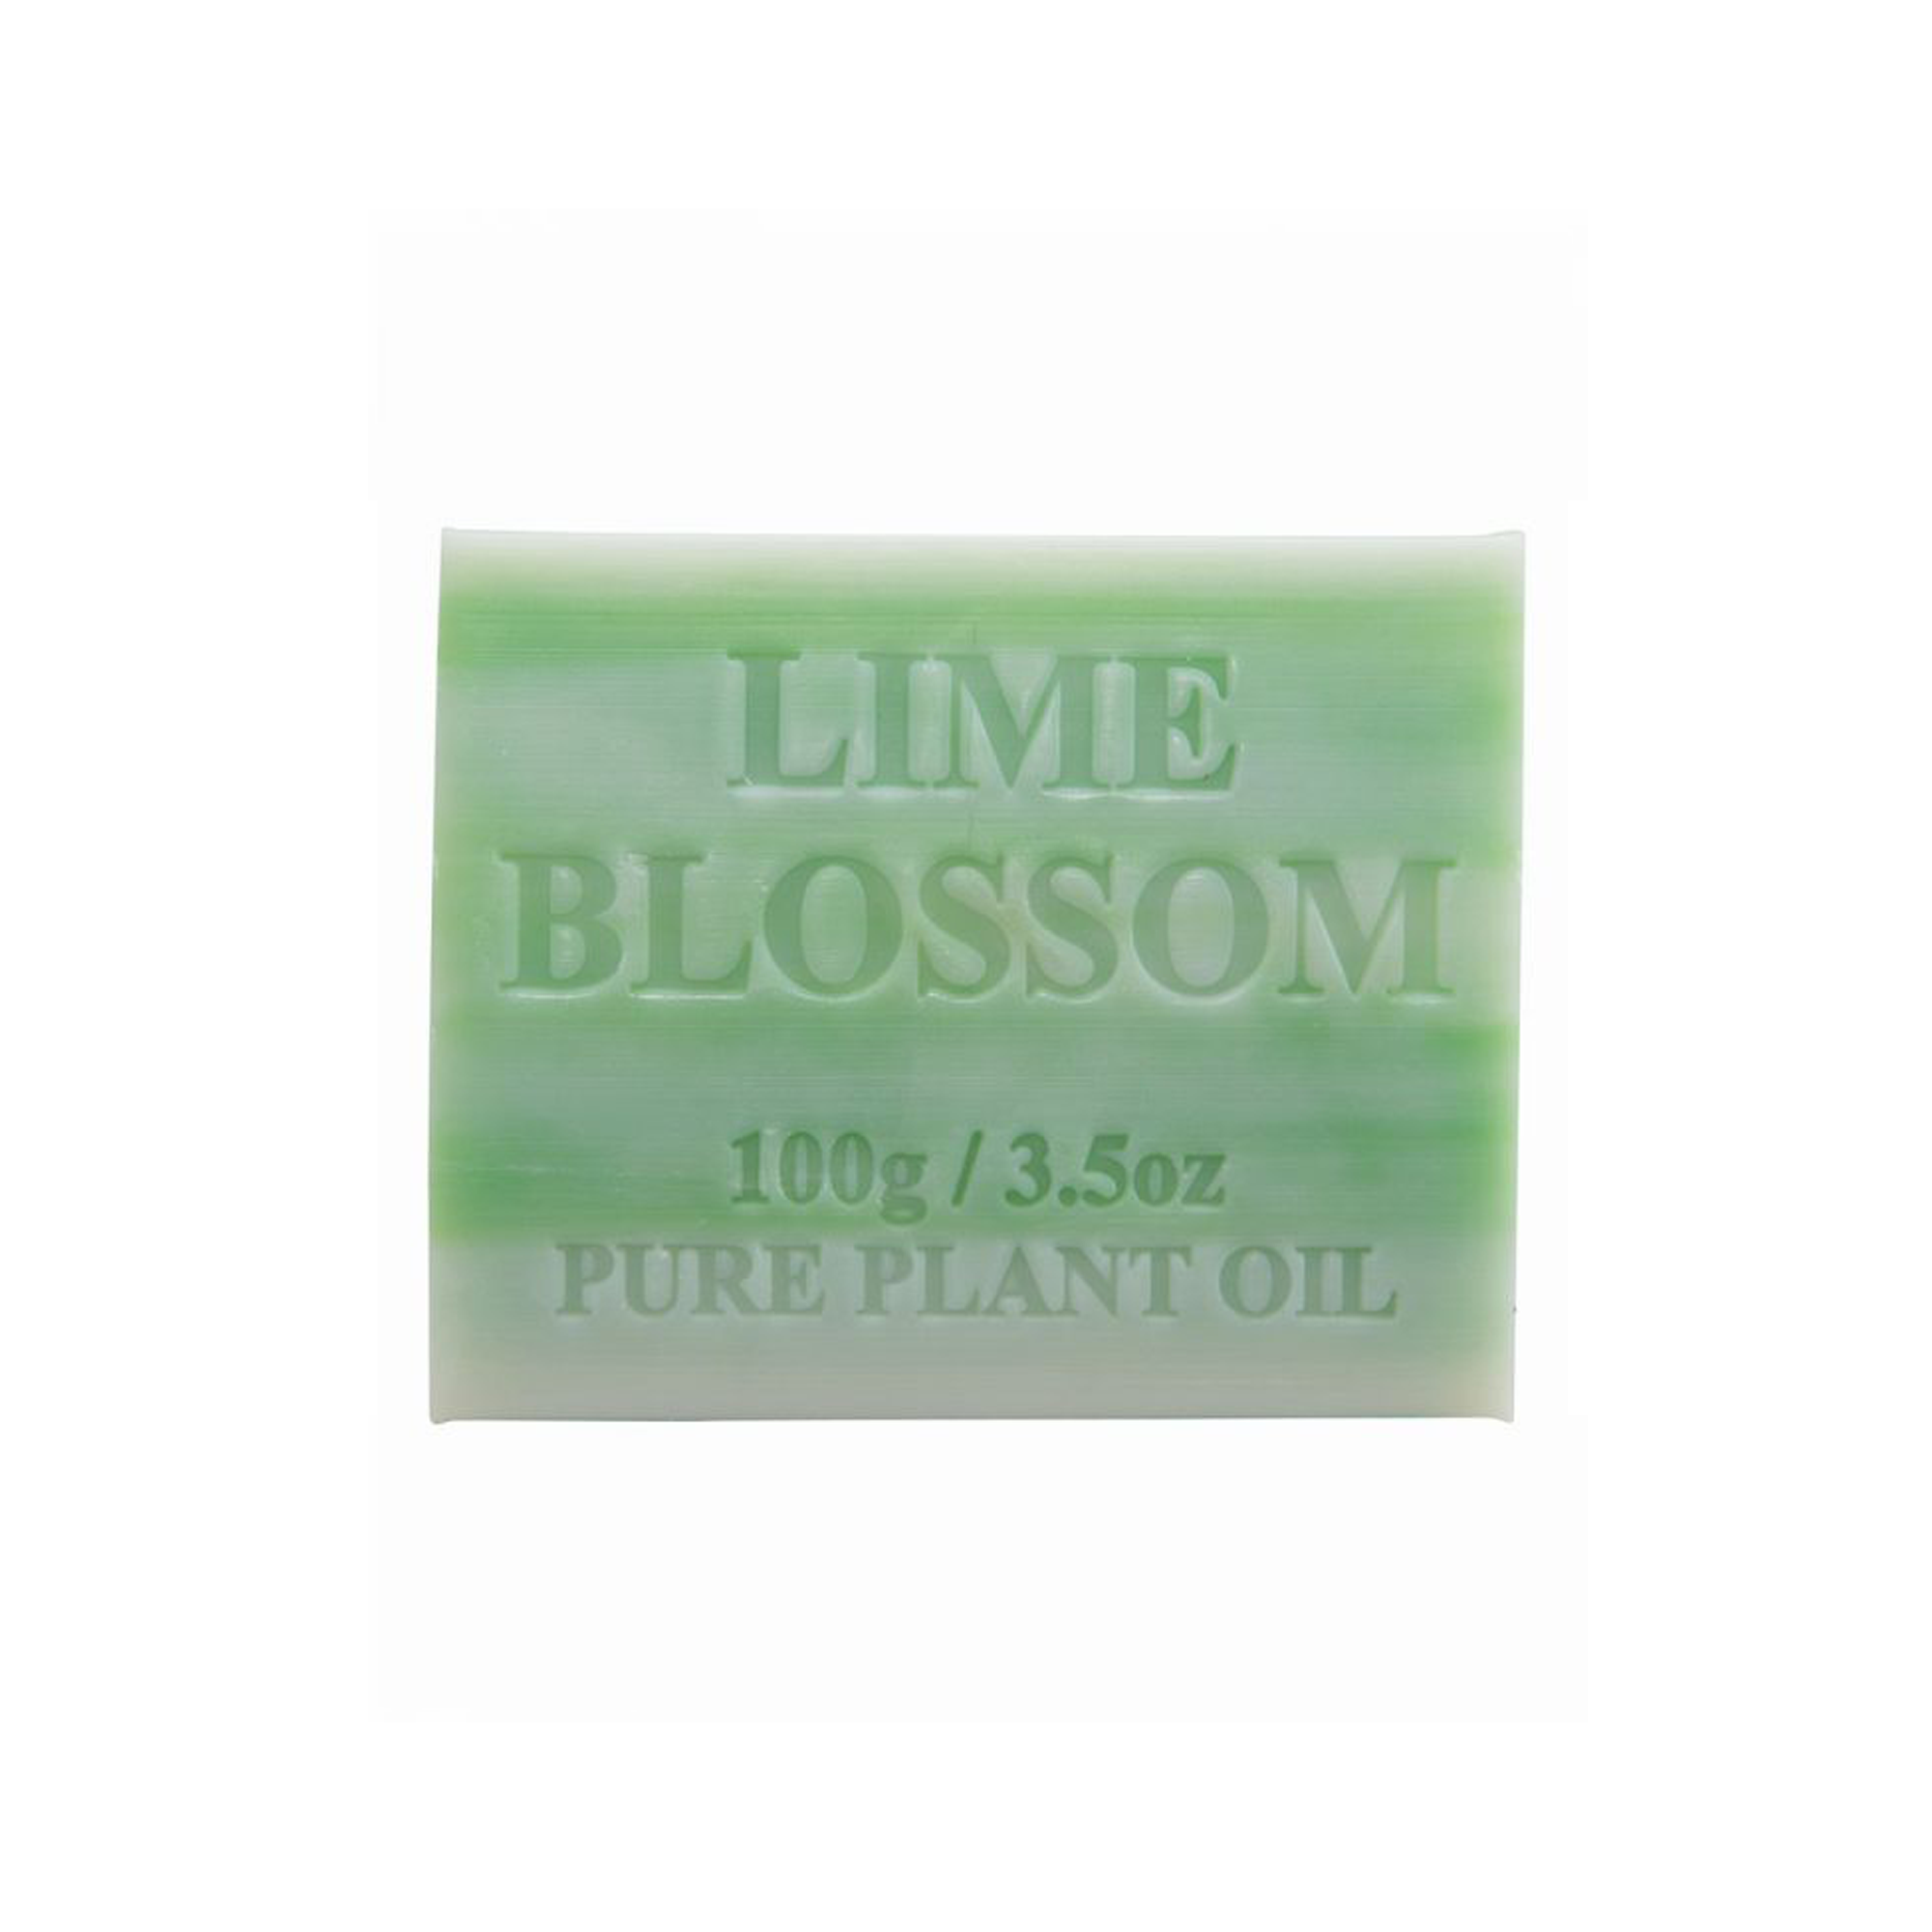 Lime Blossom 100g